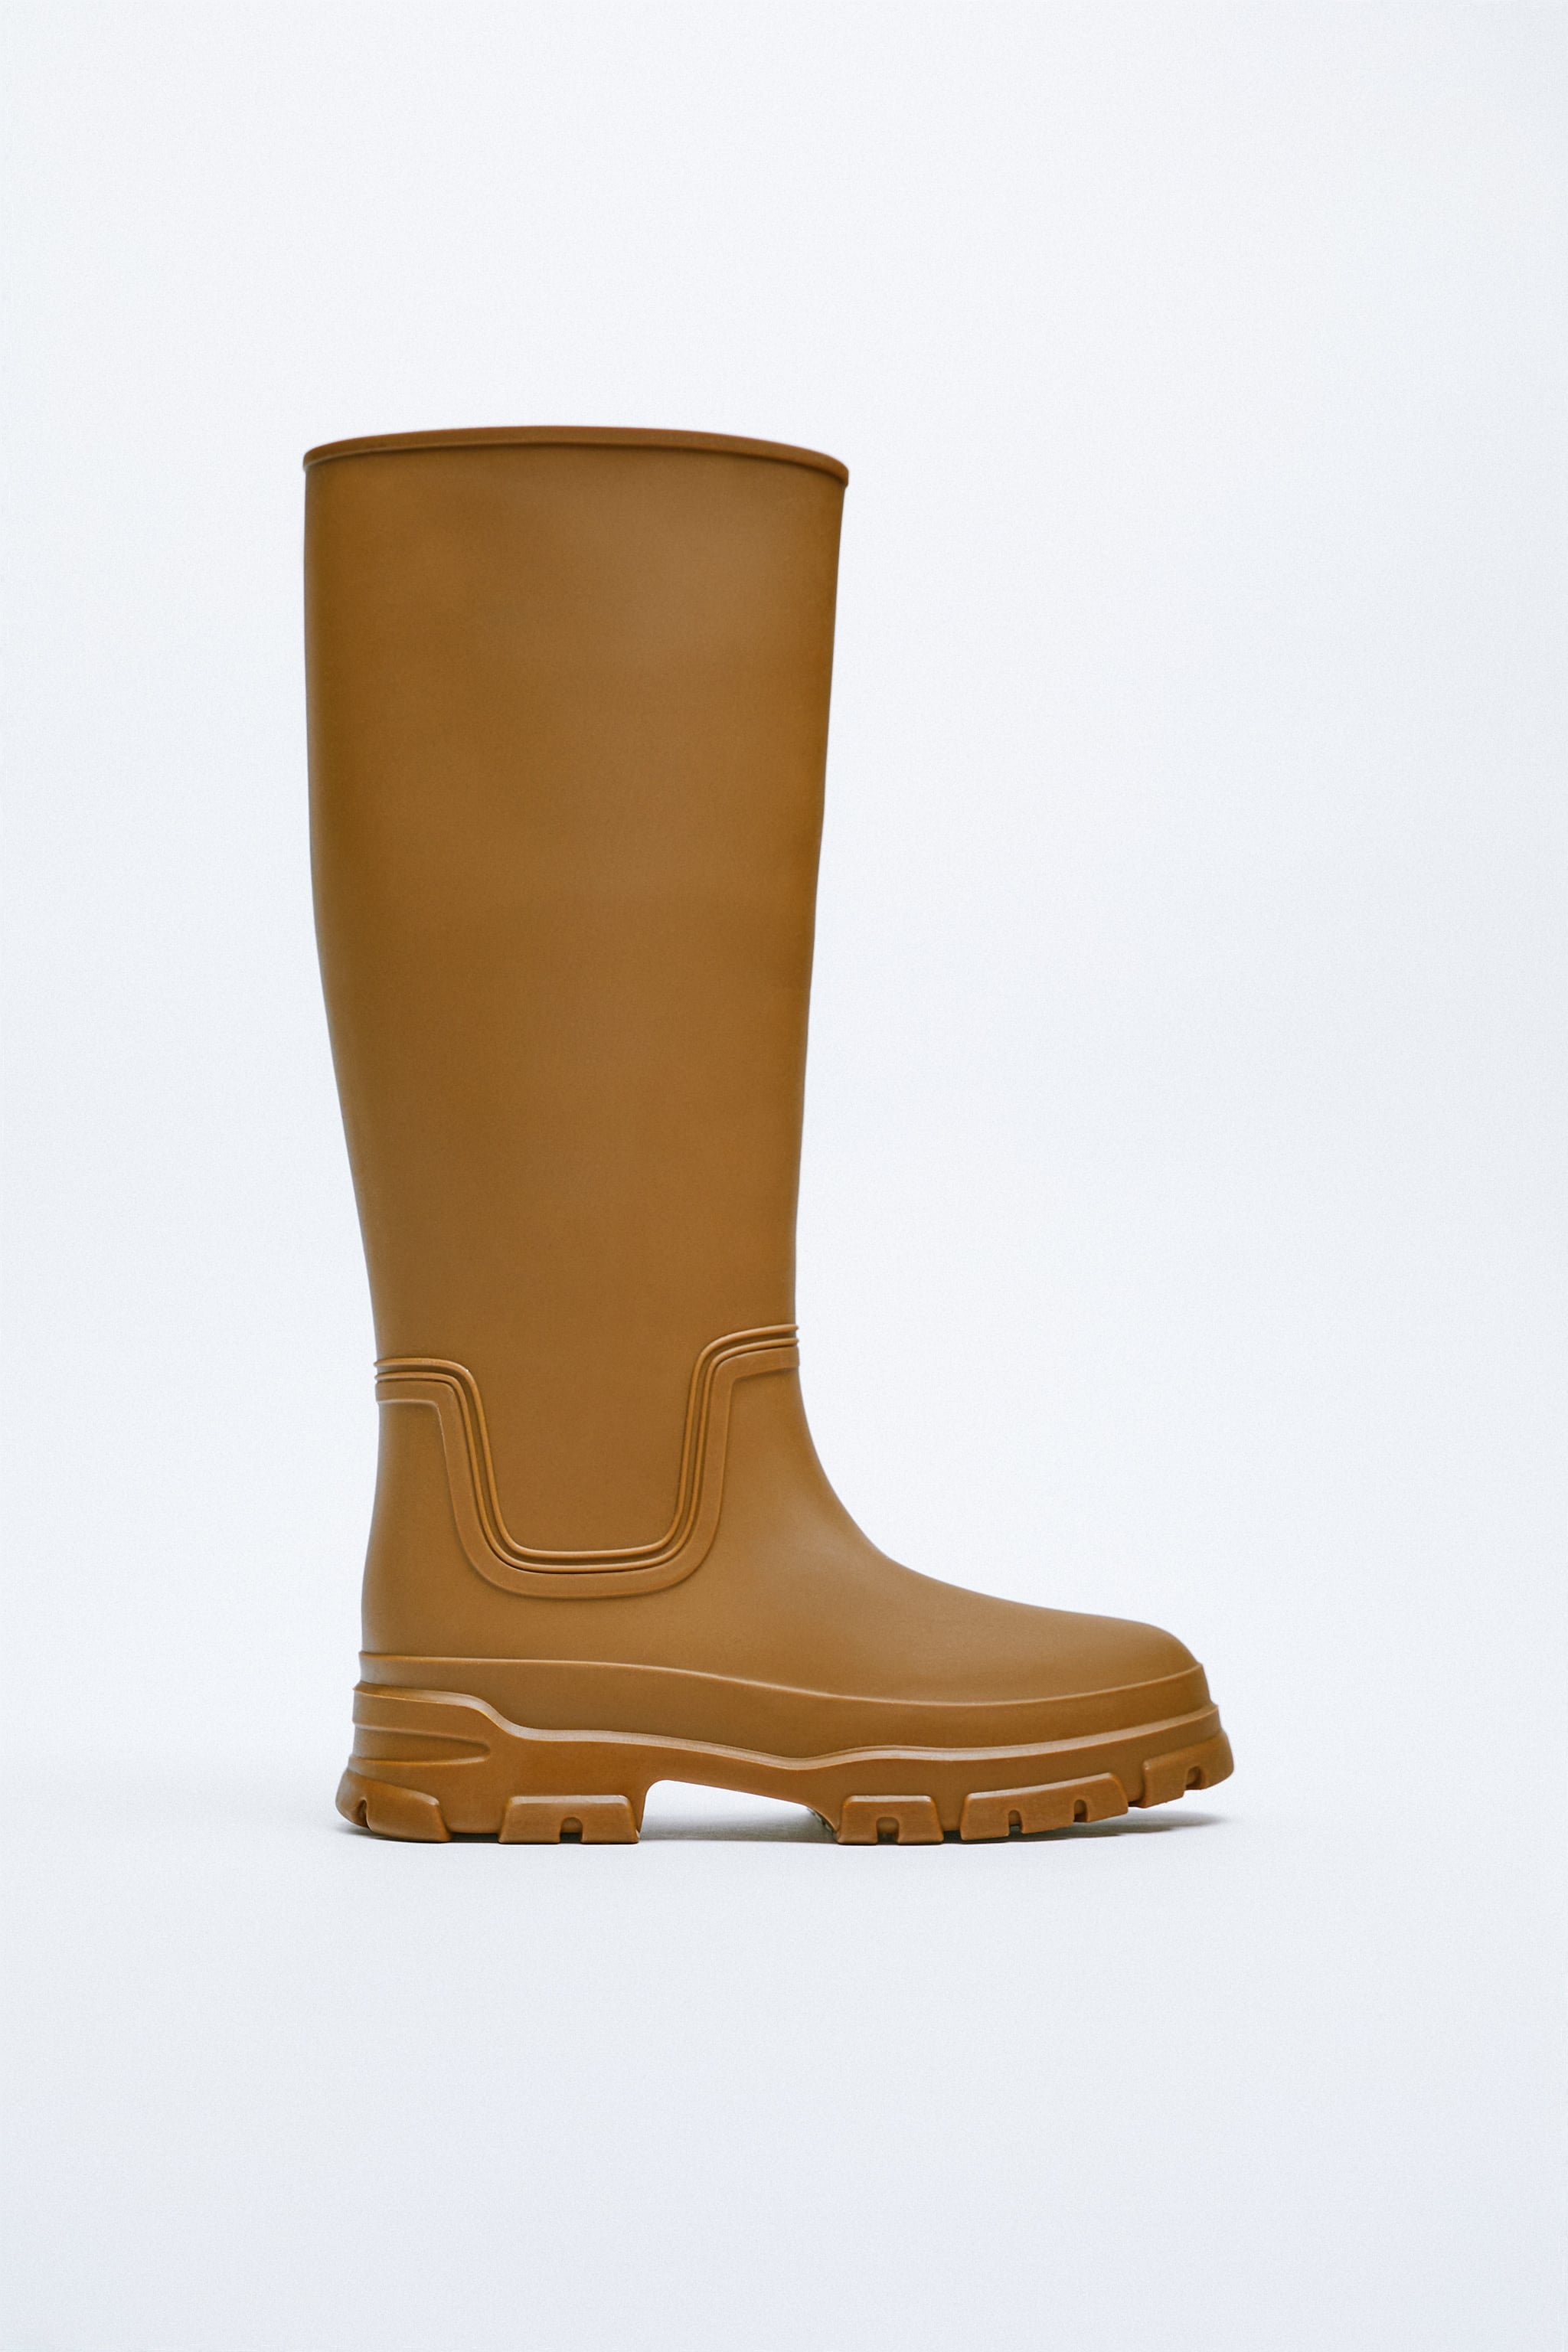 Tall Rain Zara Rain Boots | 12 Rain Boots That Are Cool Enough to All the Time | POPSUGAR Fashion Photo 7